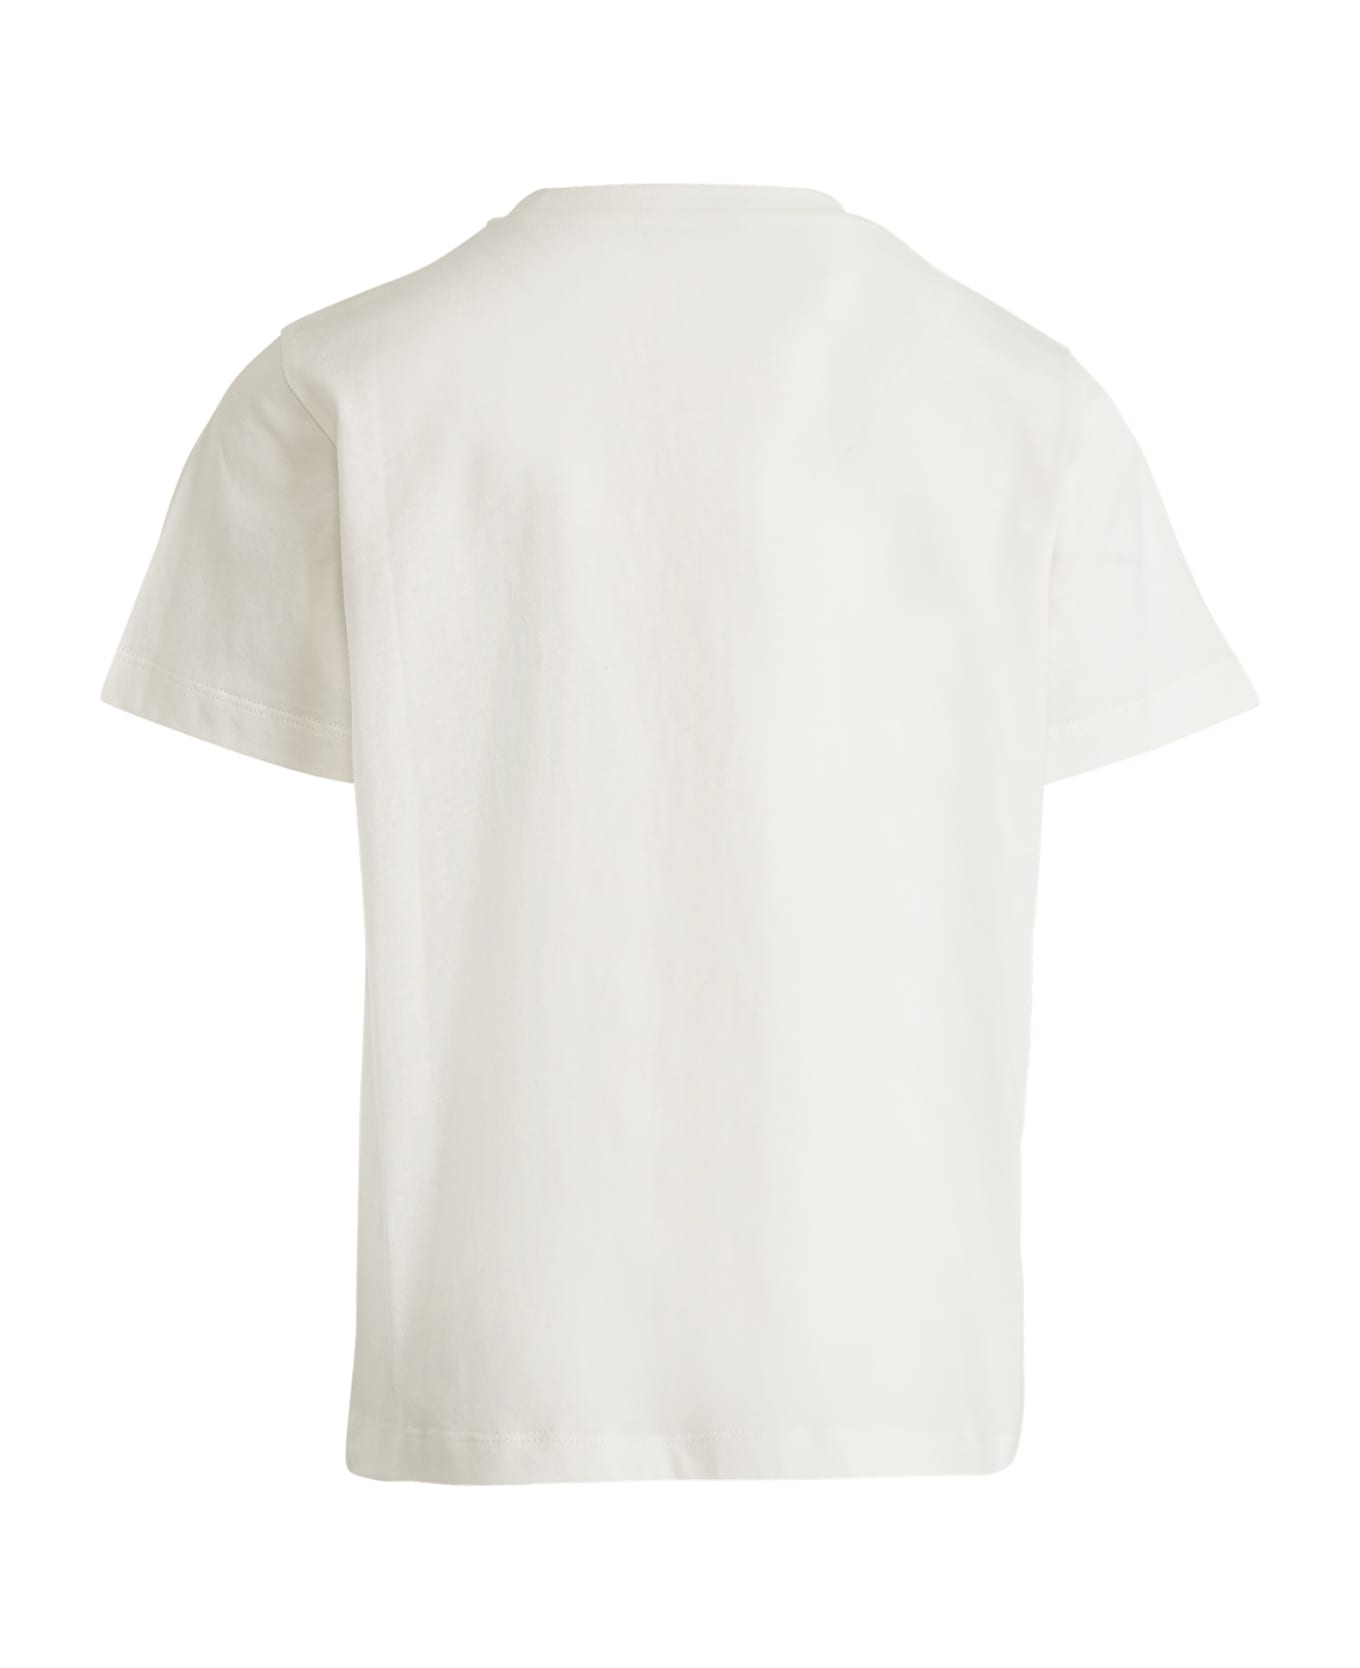 Etro T-shirt With Pegasus Motif - Cream